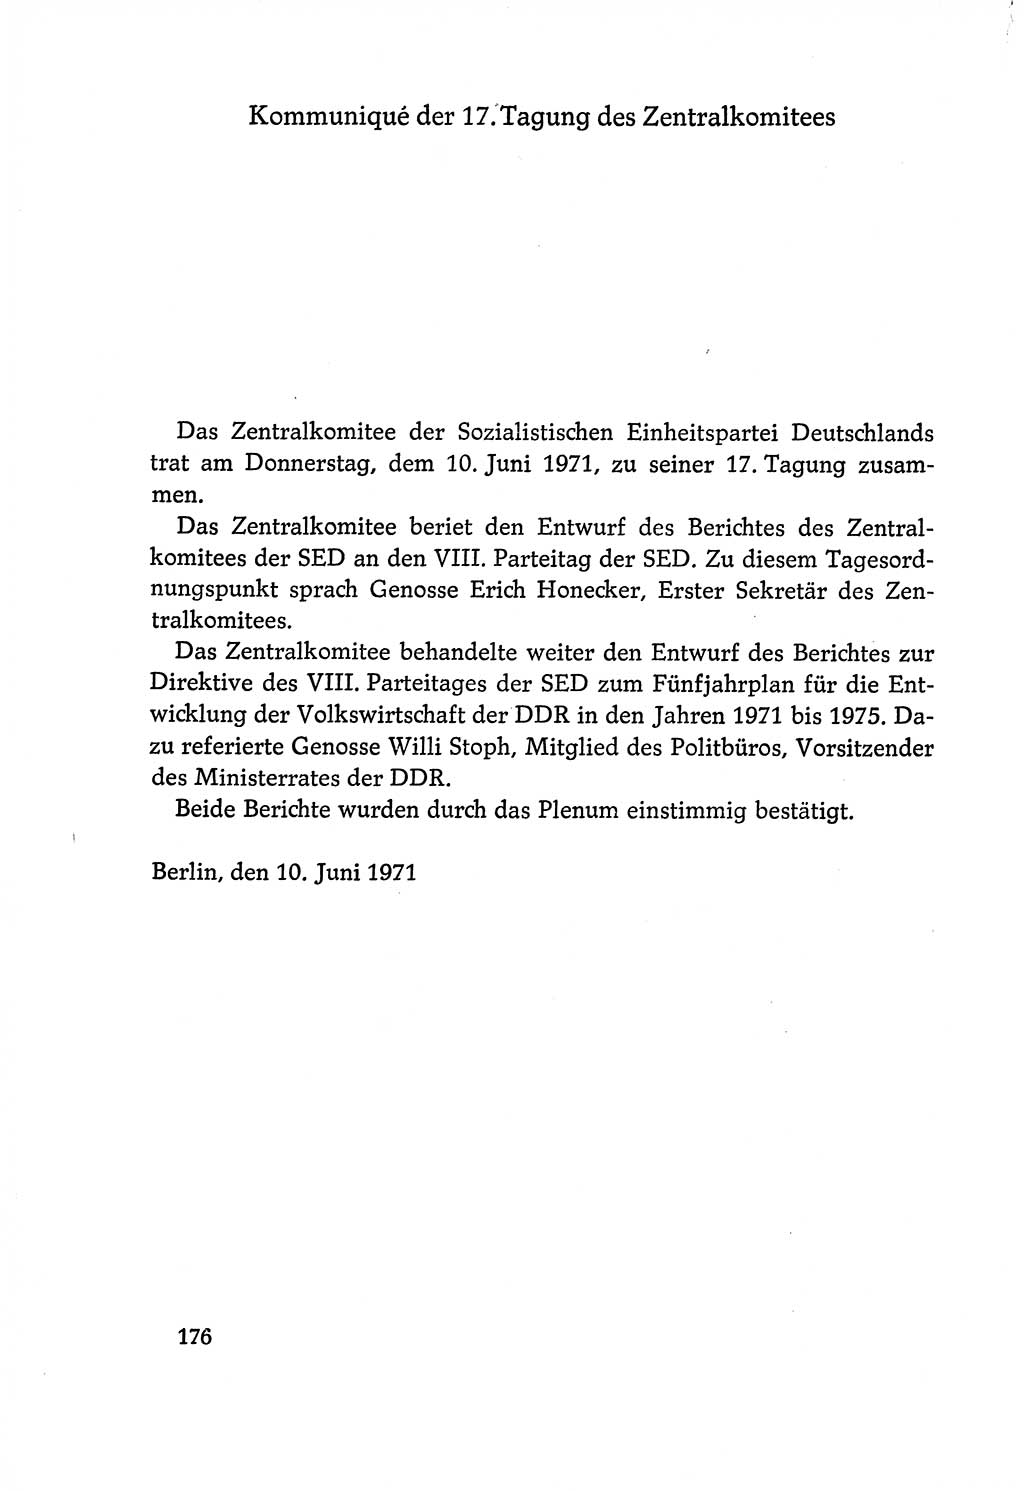 Dokumente der Sozialistischen Einheitspartei Deutschlands (SED) [Deutsche Demokratische Republik (DDR)] 1970-1971, Seite 176 (Dok. SED DDR 1970-1971, S. 176)